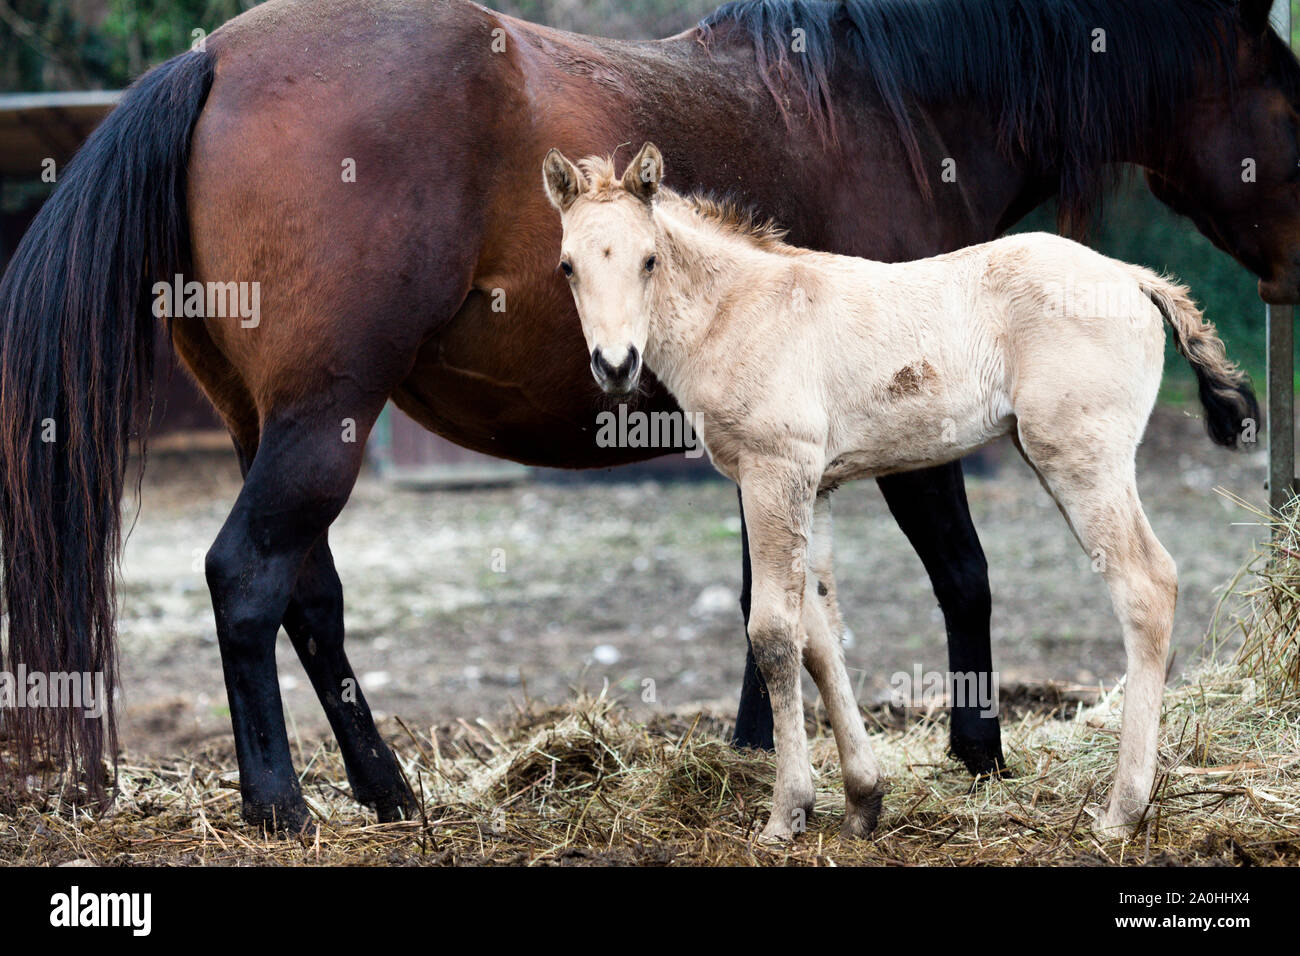 Cavalli Mare e puledro guardare la camara, immagine a colori CANON EOS 5D mktII F5 ISO 1600 EF L 100-400 mm Foto Stock